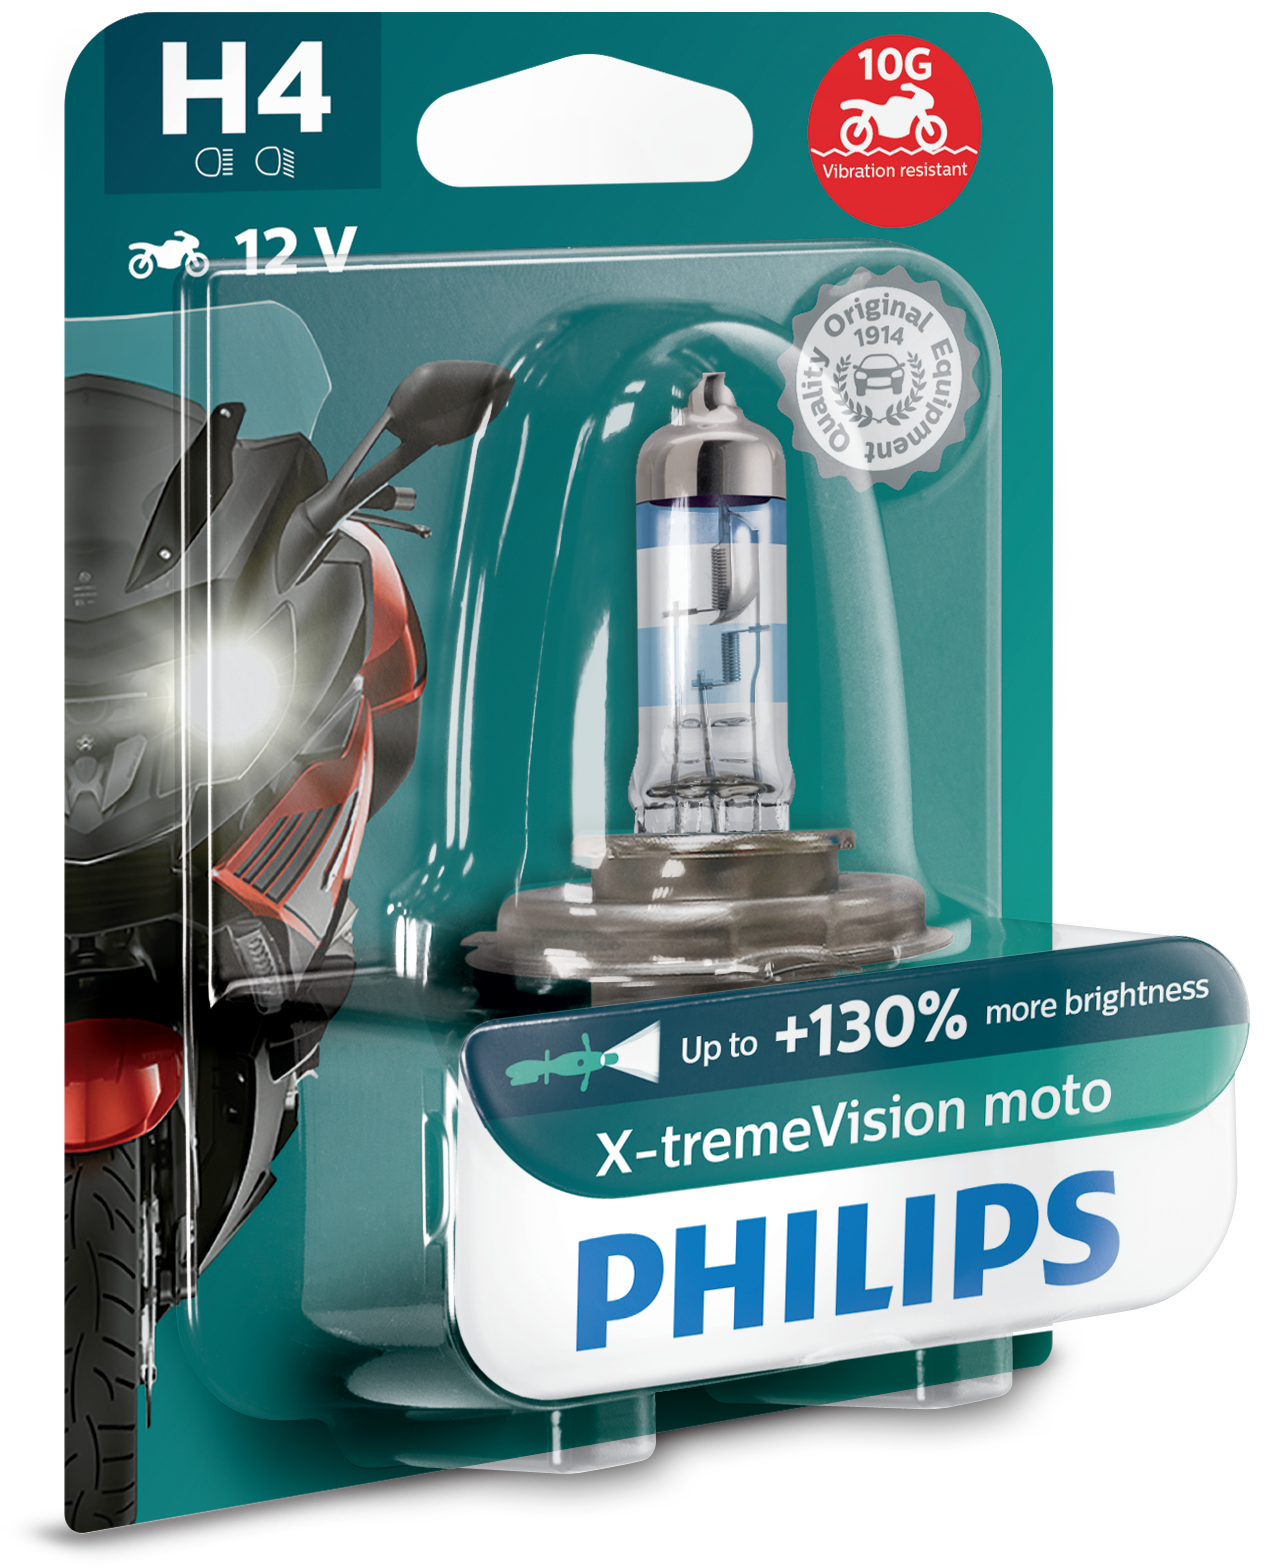 H4 X-tremeVision+ Moto 00056930 von Philips